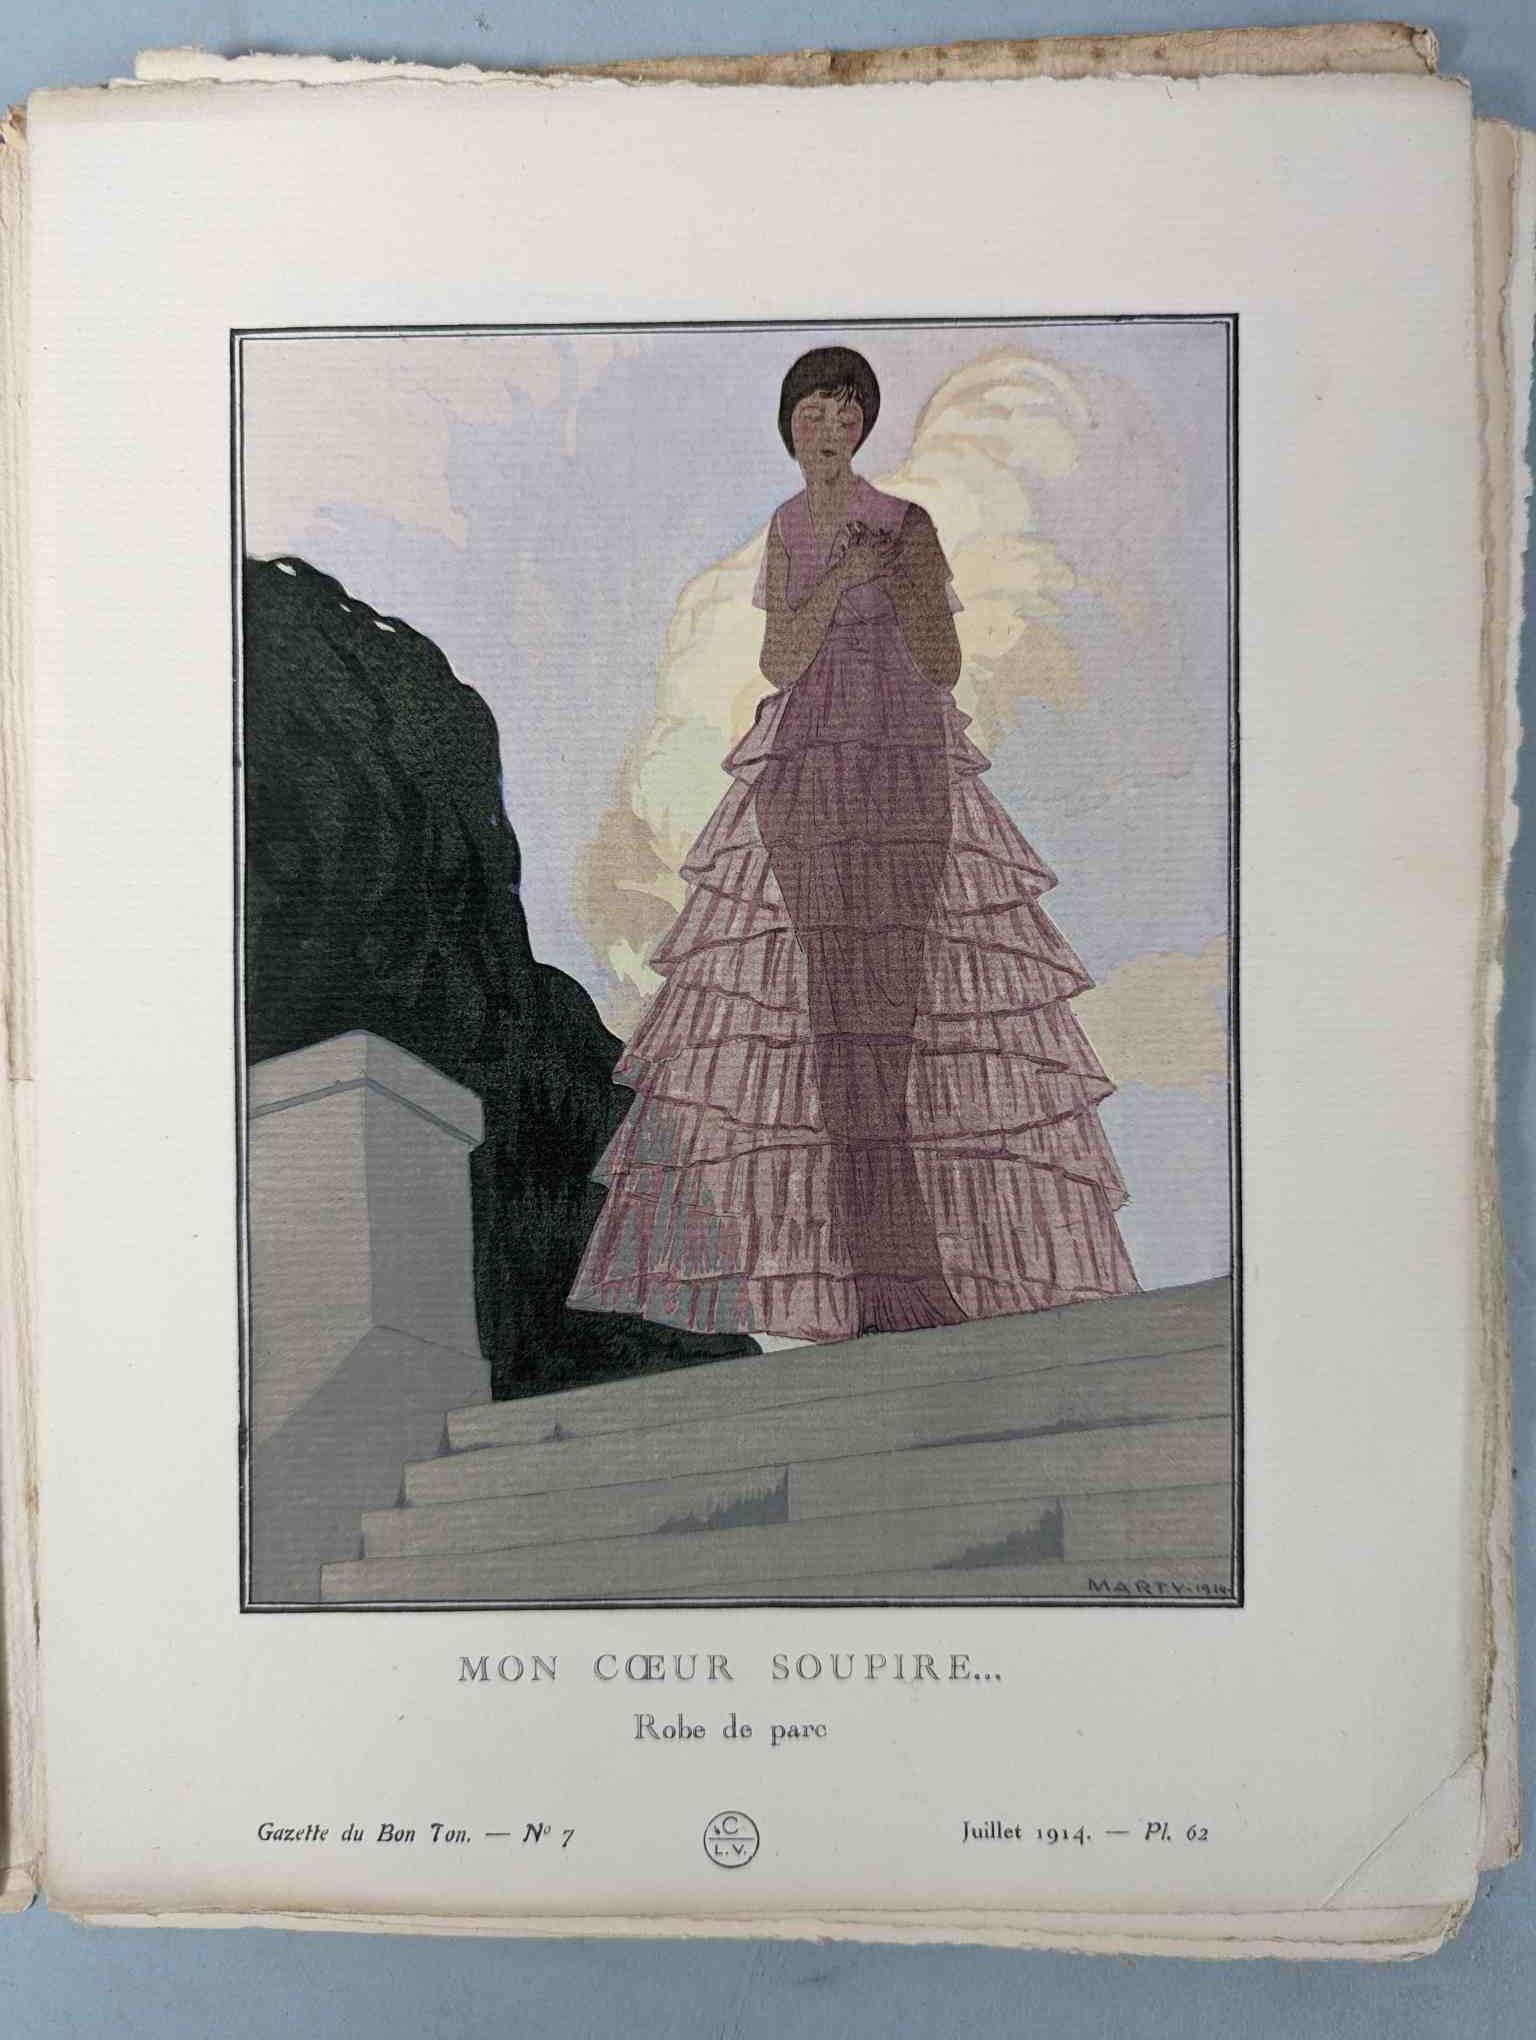 FASHION. VOGEL, Lucien. GAZETTE DU BON TON: Art-Modes & Frivolités, Paris 1913-14, 4 vol. - Image 40 of 54